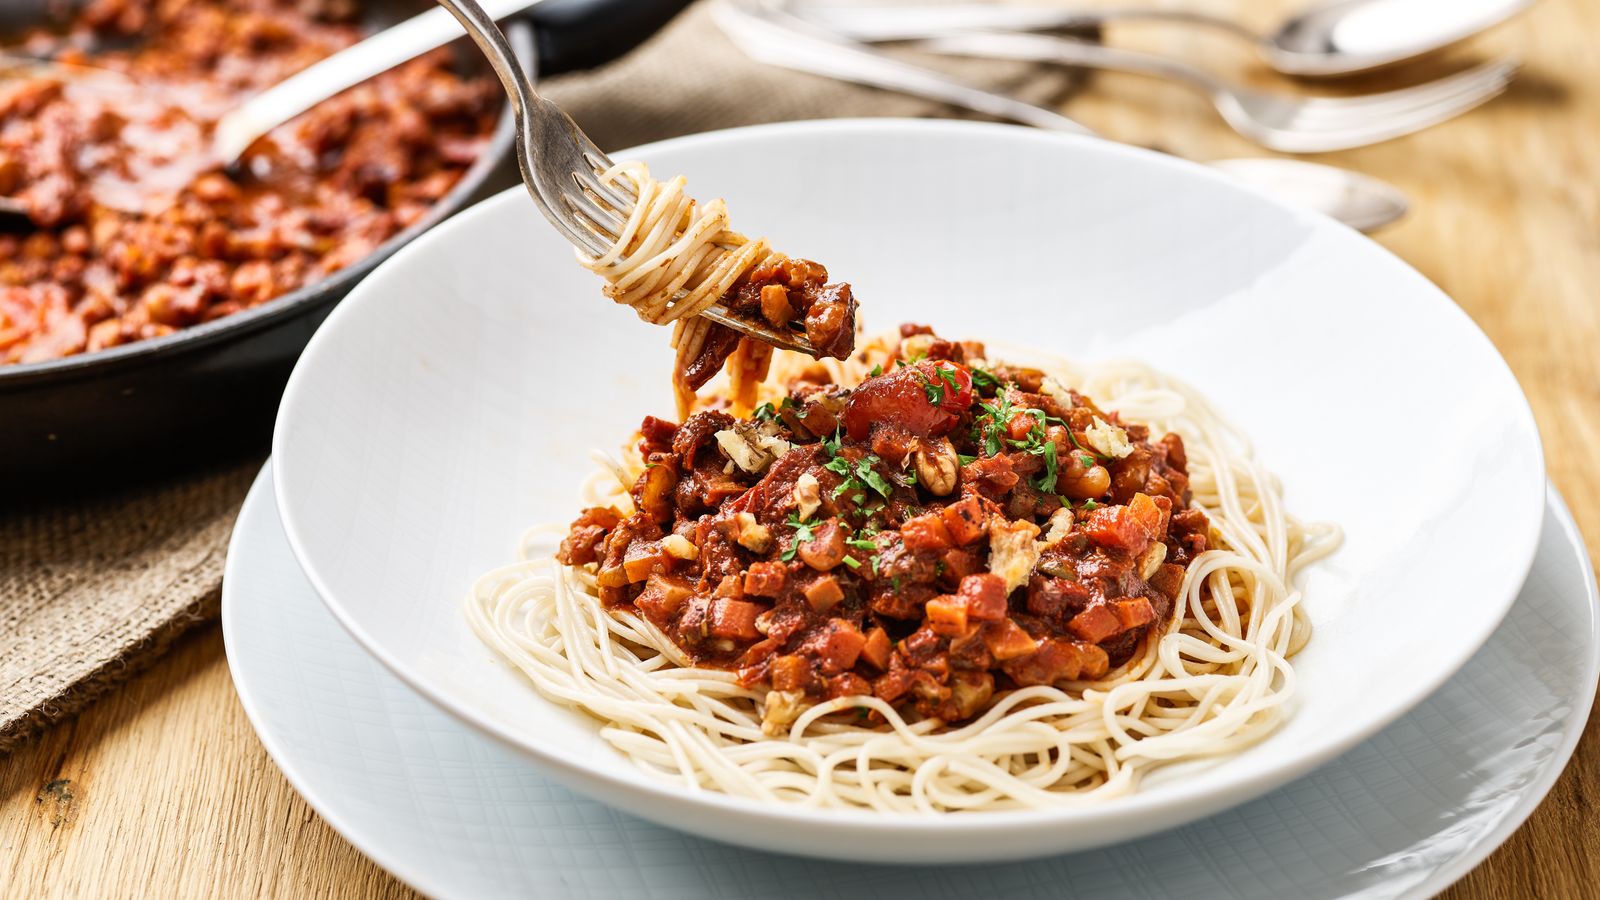 Spaghetti mit Walnuss-Bolognese auf einem weissen Teller serviert